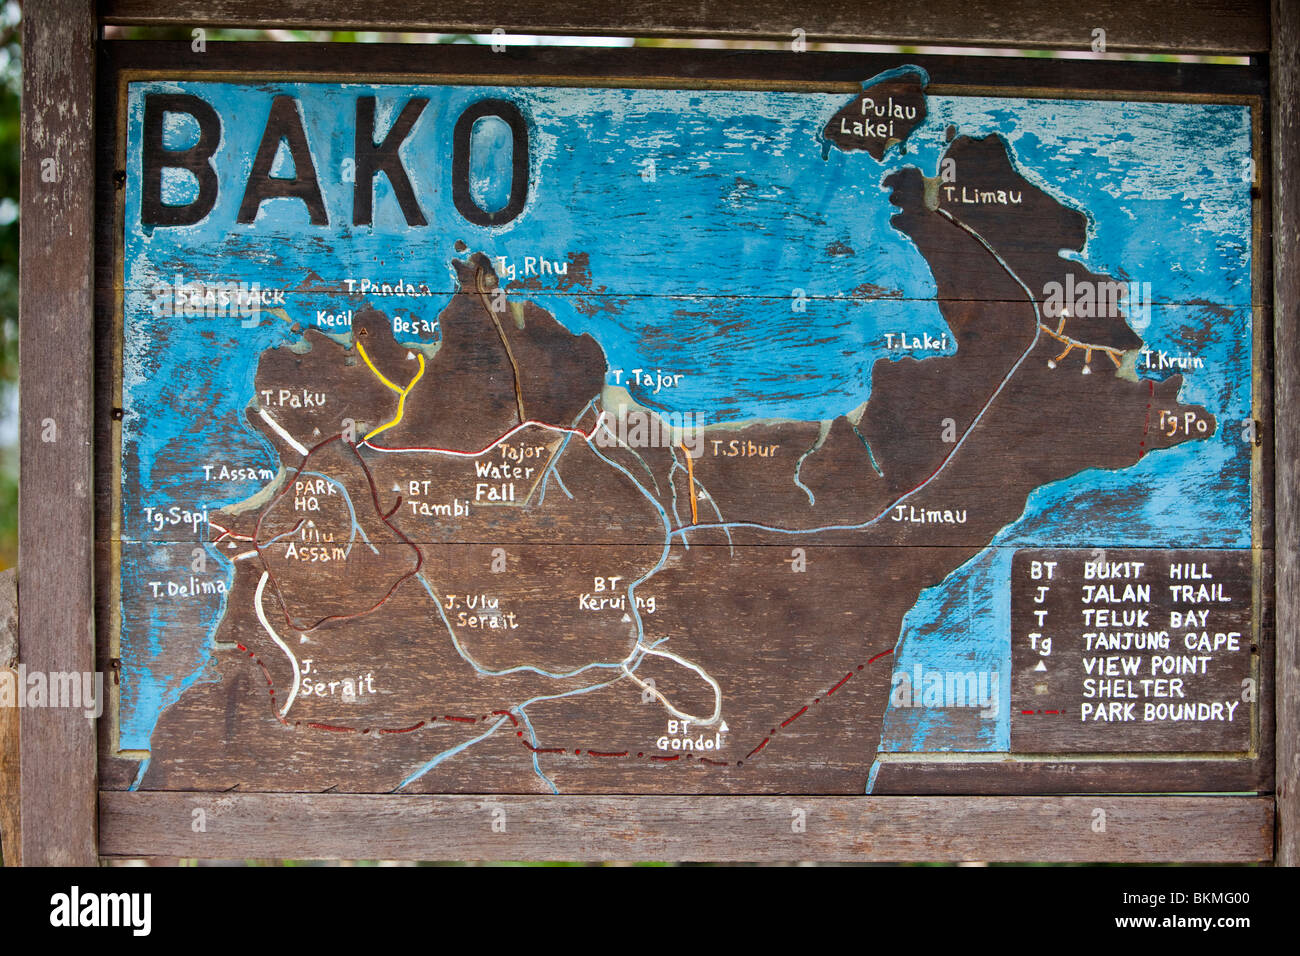 Plan de parc national de Bako. Créé en 1957, Bako est le plus ancien parc national au Sarawak. Kuching, Sarawak, Bornéo, Malaisie. Banque D'Images